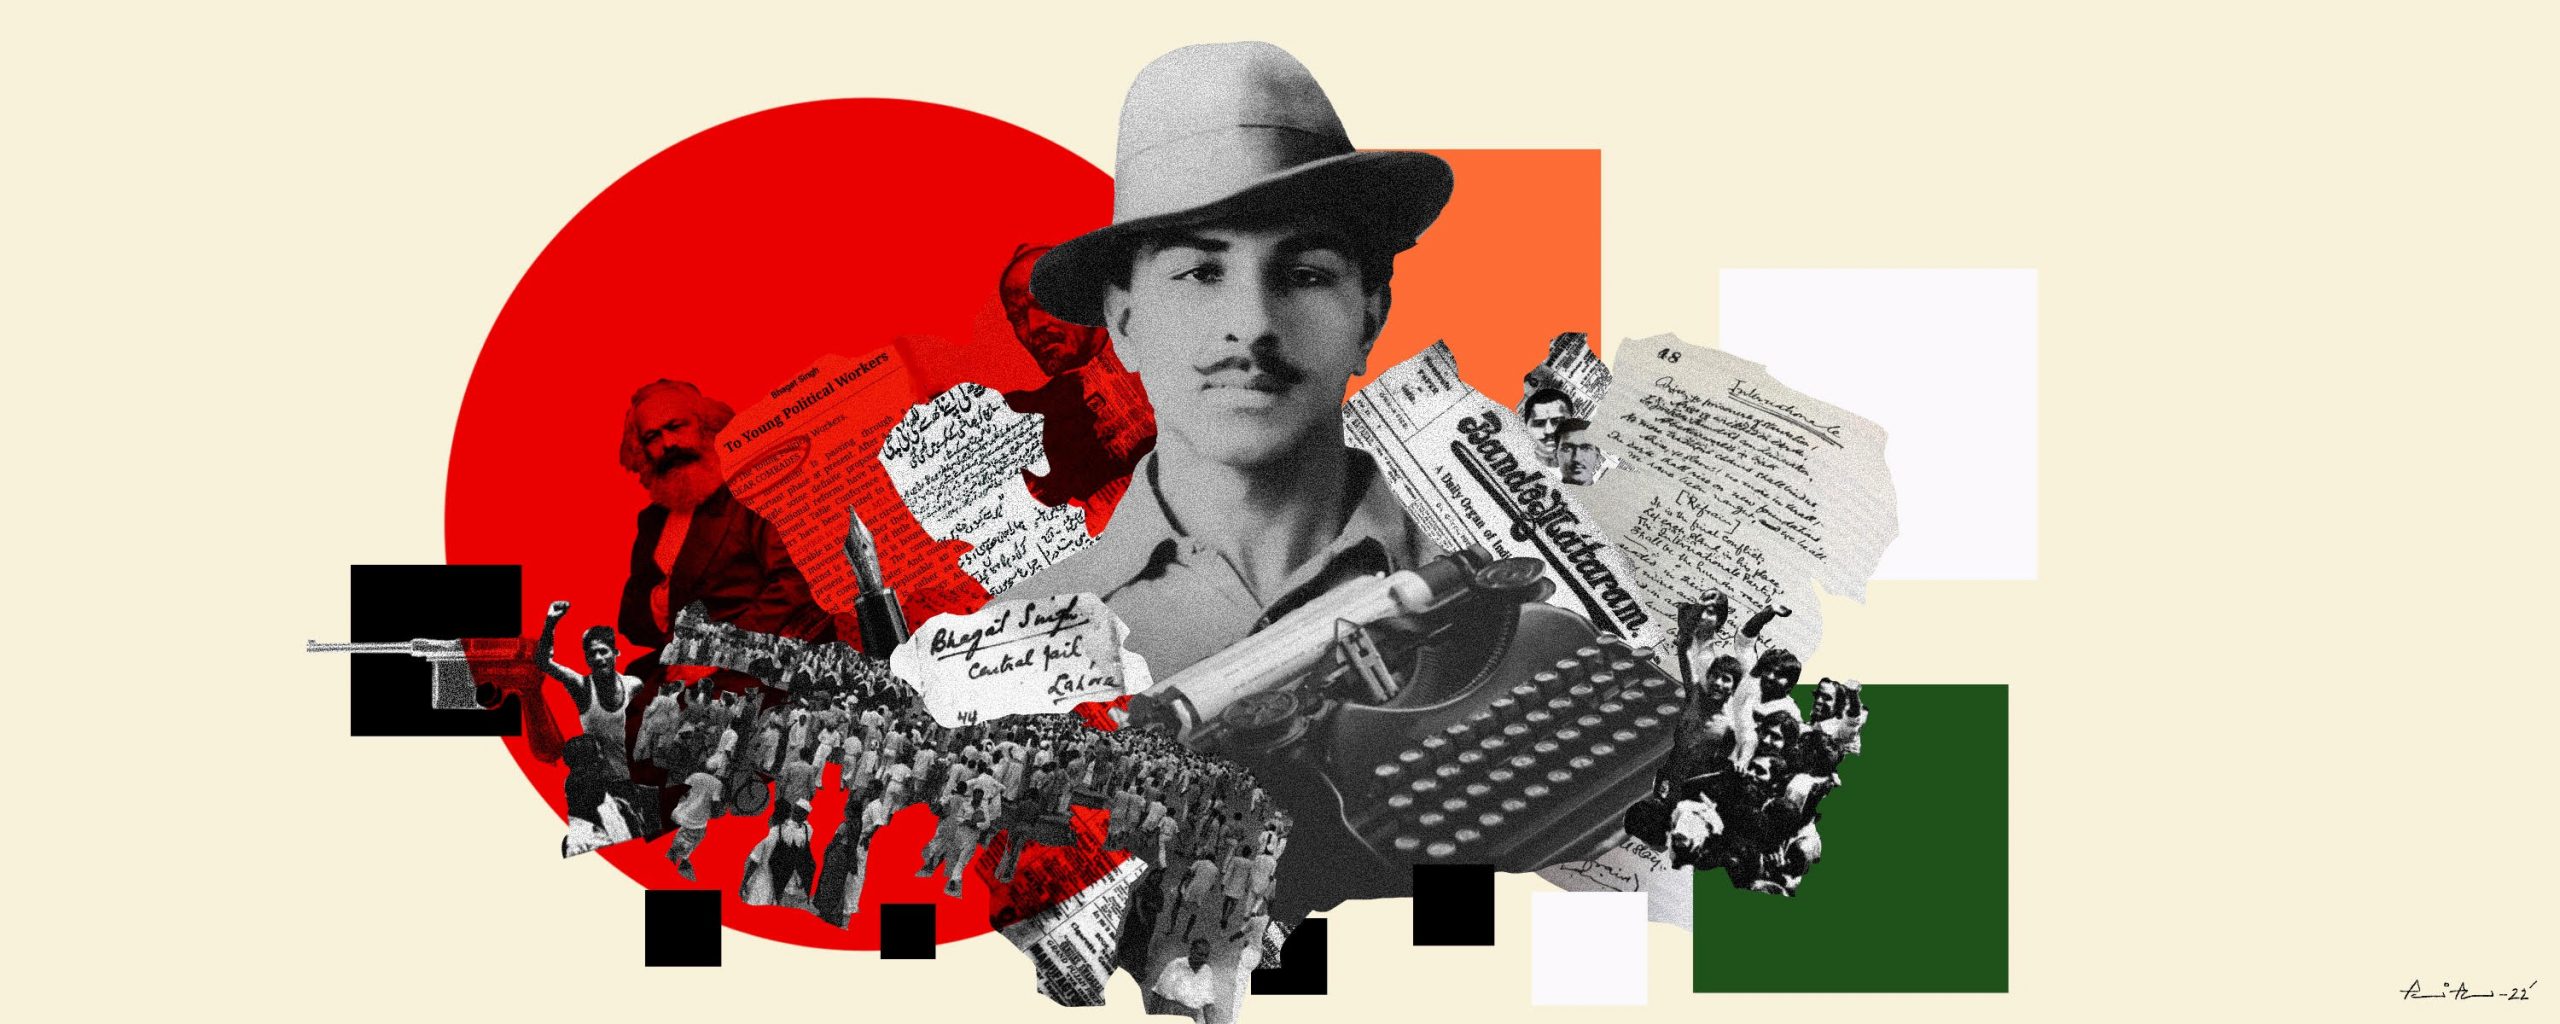 भगत सिंह को राजनीतिक उपभोक्तावाद का शिकार बनाने की होड़ का नतीजा क्या होगा